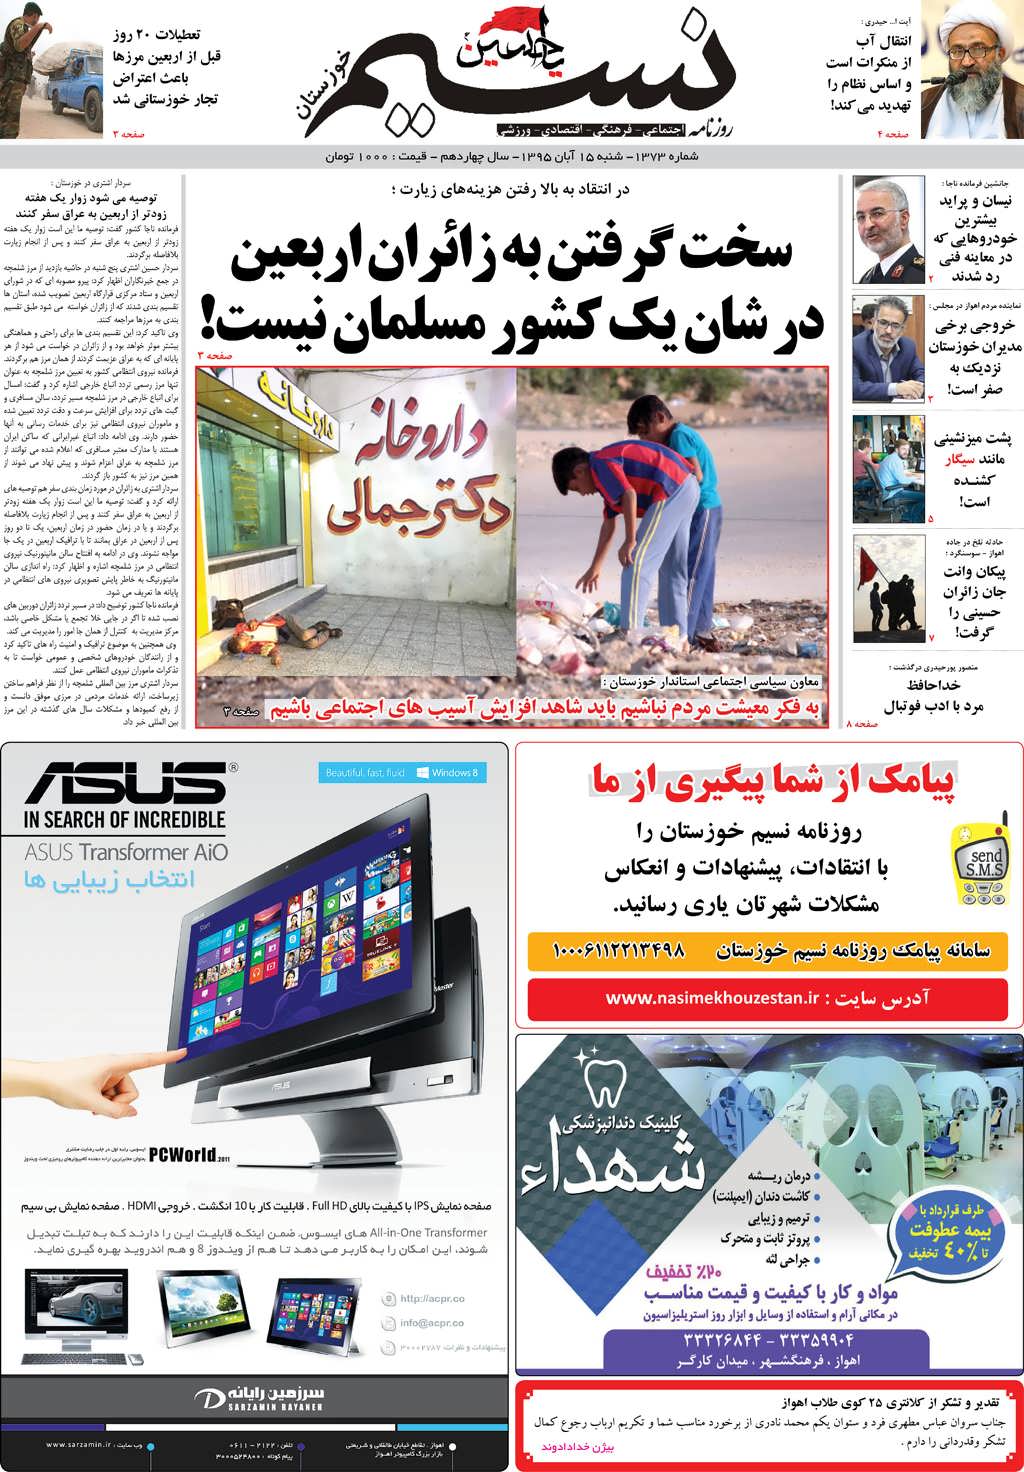 صفحه اصلی روزنامه نسیم شماره 1373